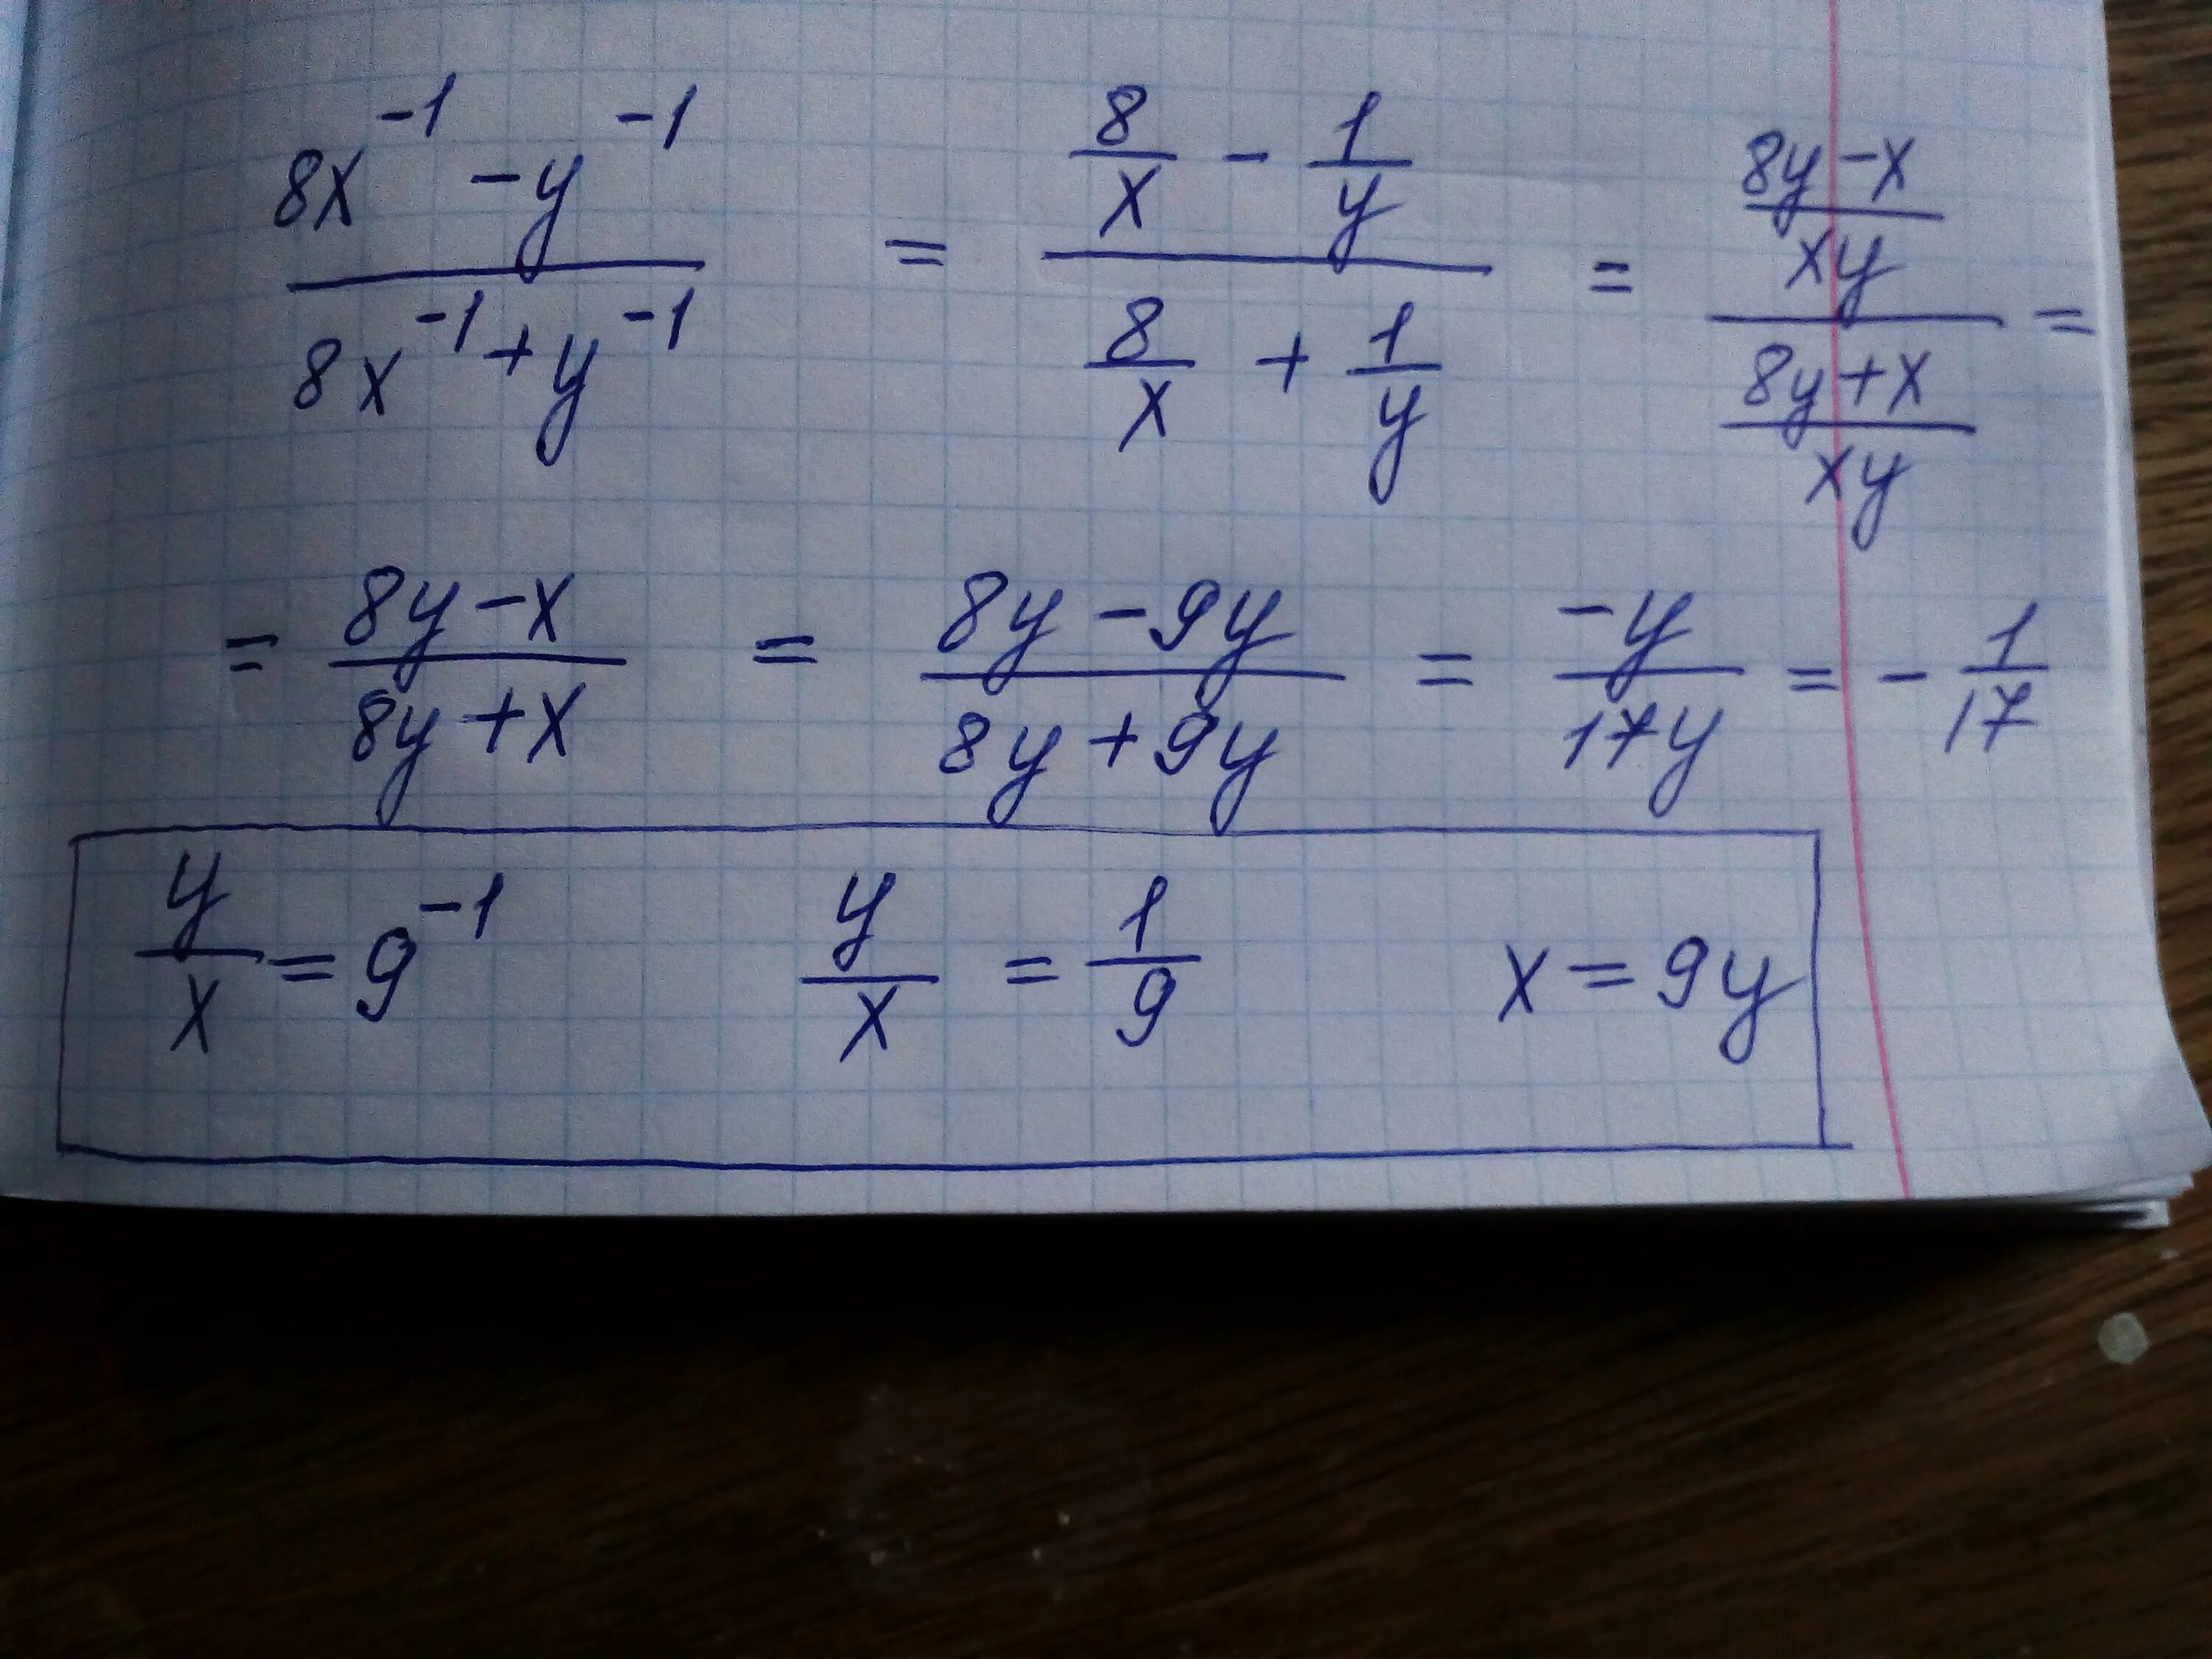 1 x 1 y 1 19. 8x=1. (1/X-1/Y):(1/X+1/Y). Y=-1/8x. A1 8x1.